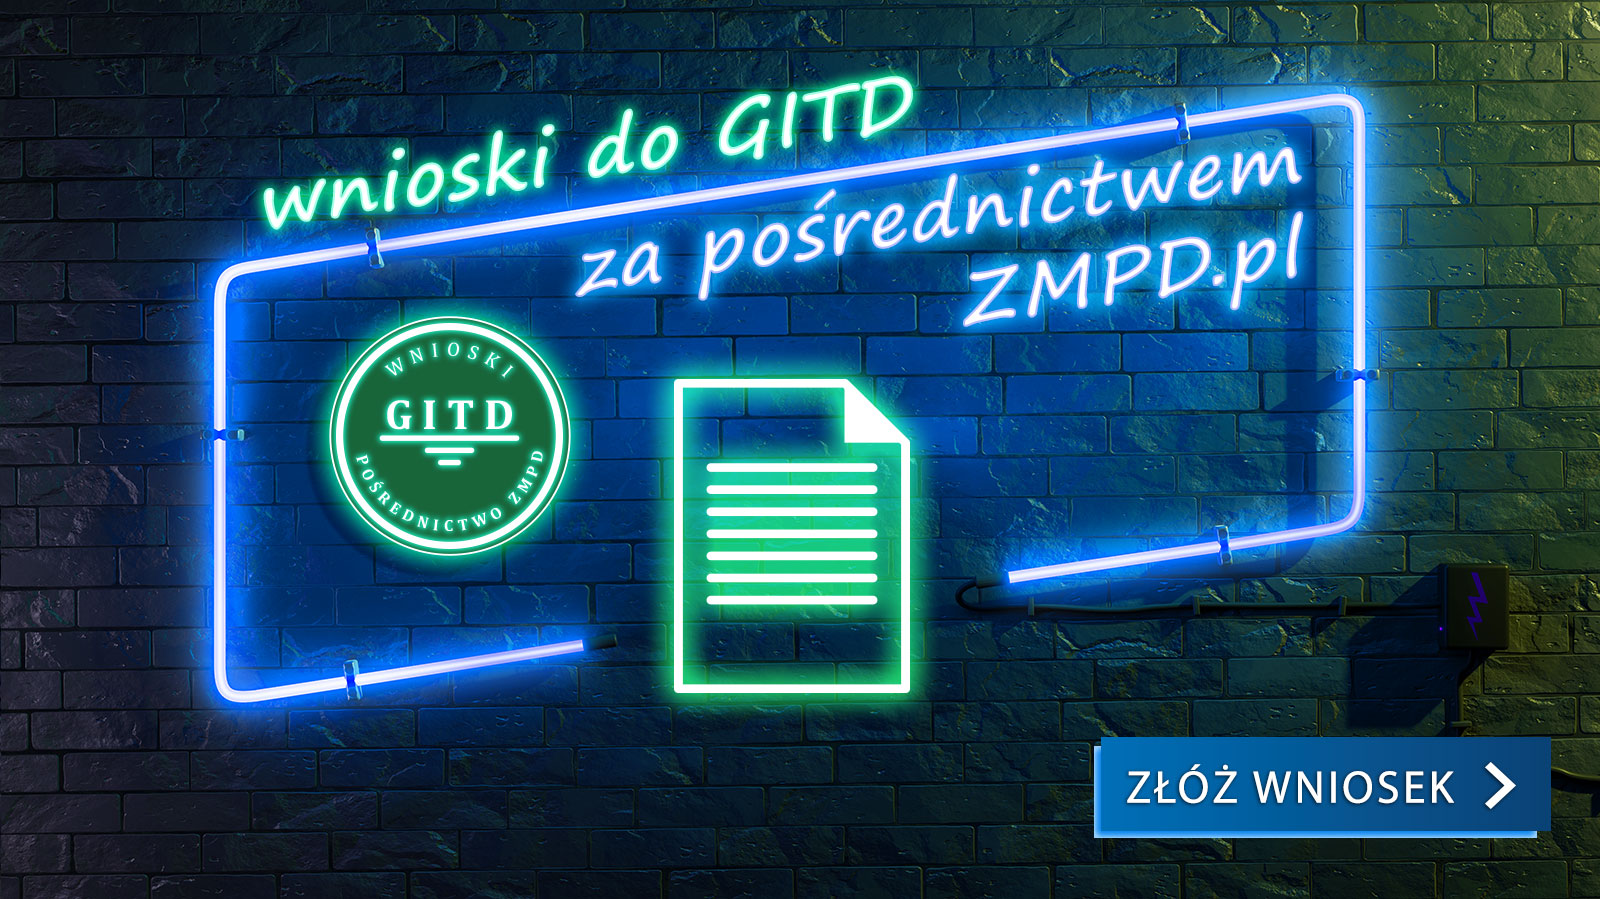 Złóż wniosek do GITD za pośrednictwem ZMPD